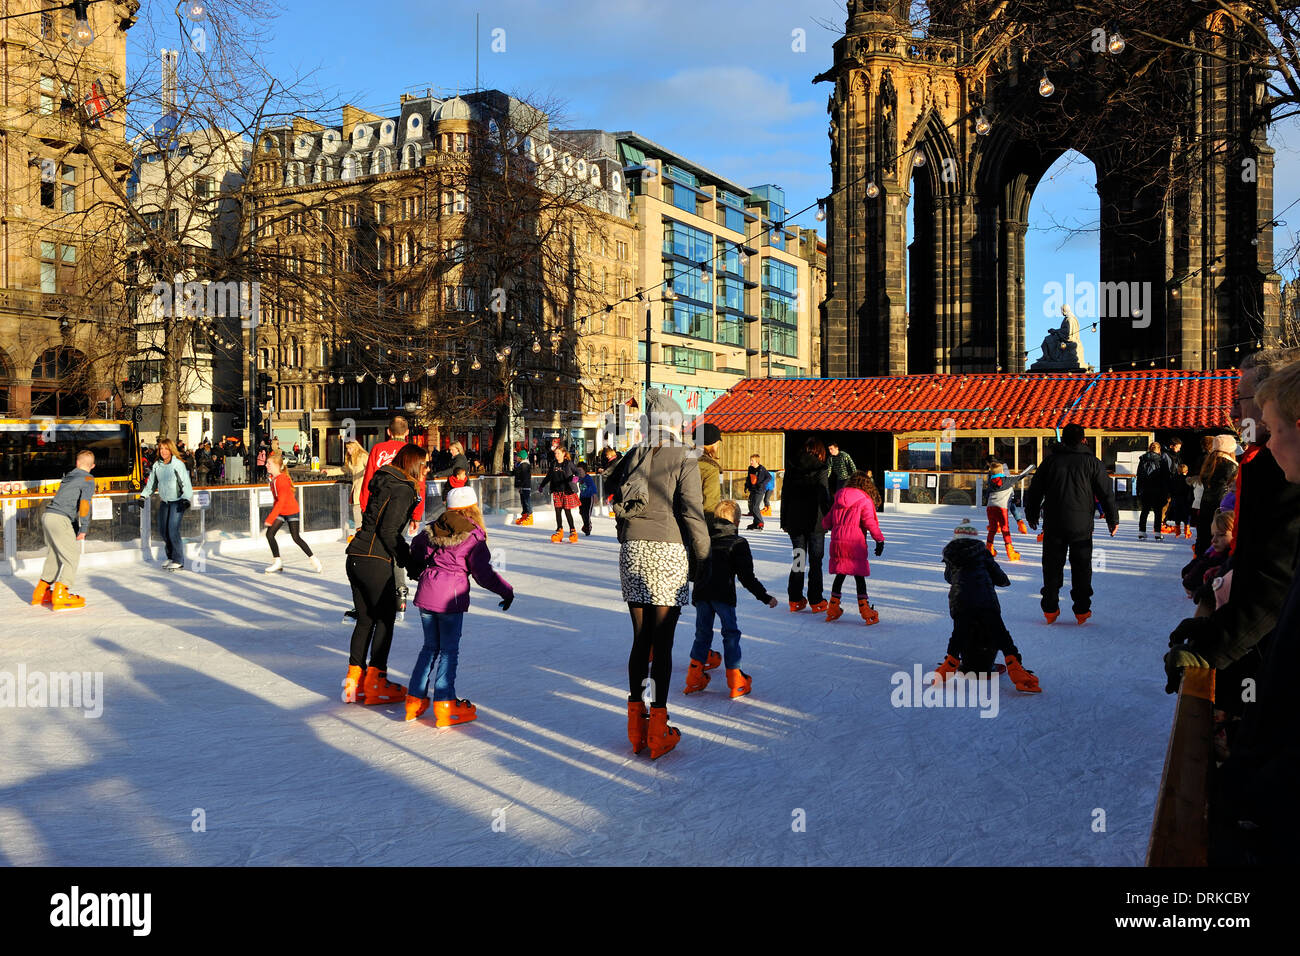 Weihnachten-Eis-Eisbahn - Princes Street Gardens, Edinburgh, Schottland Stockfoto